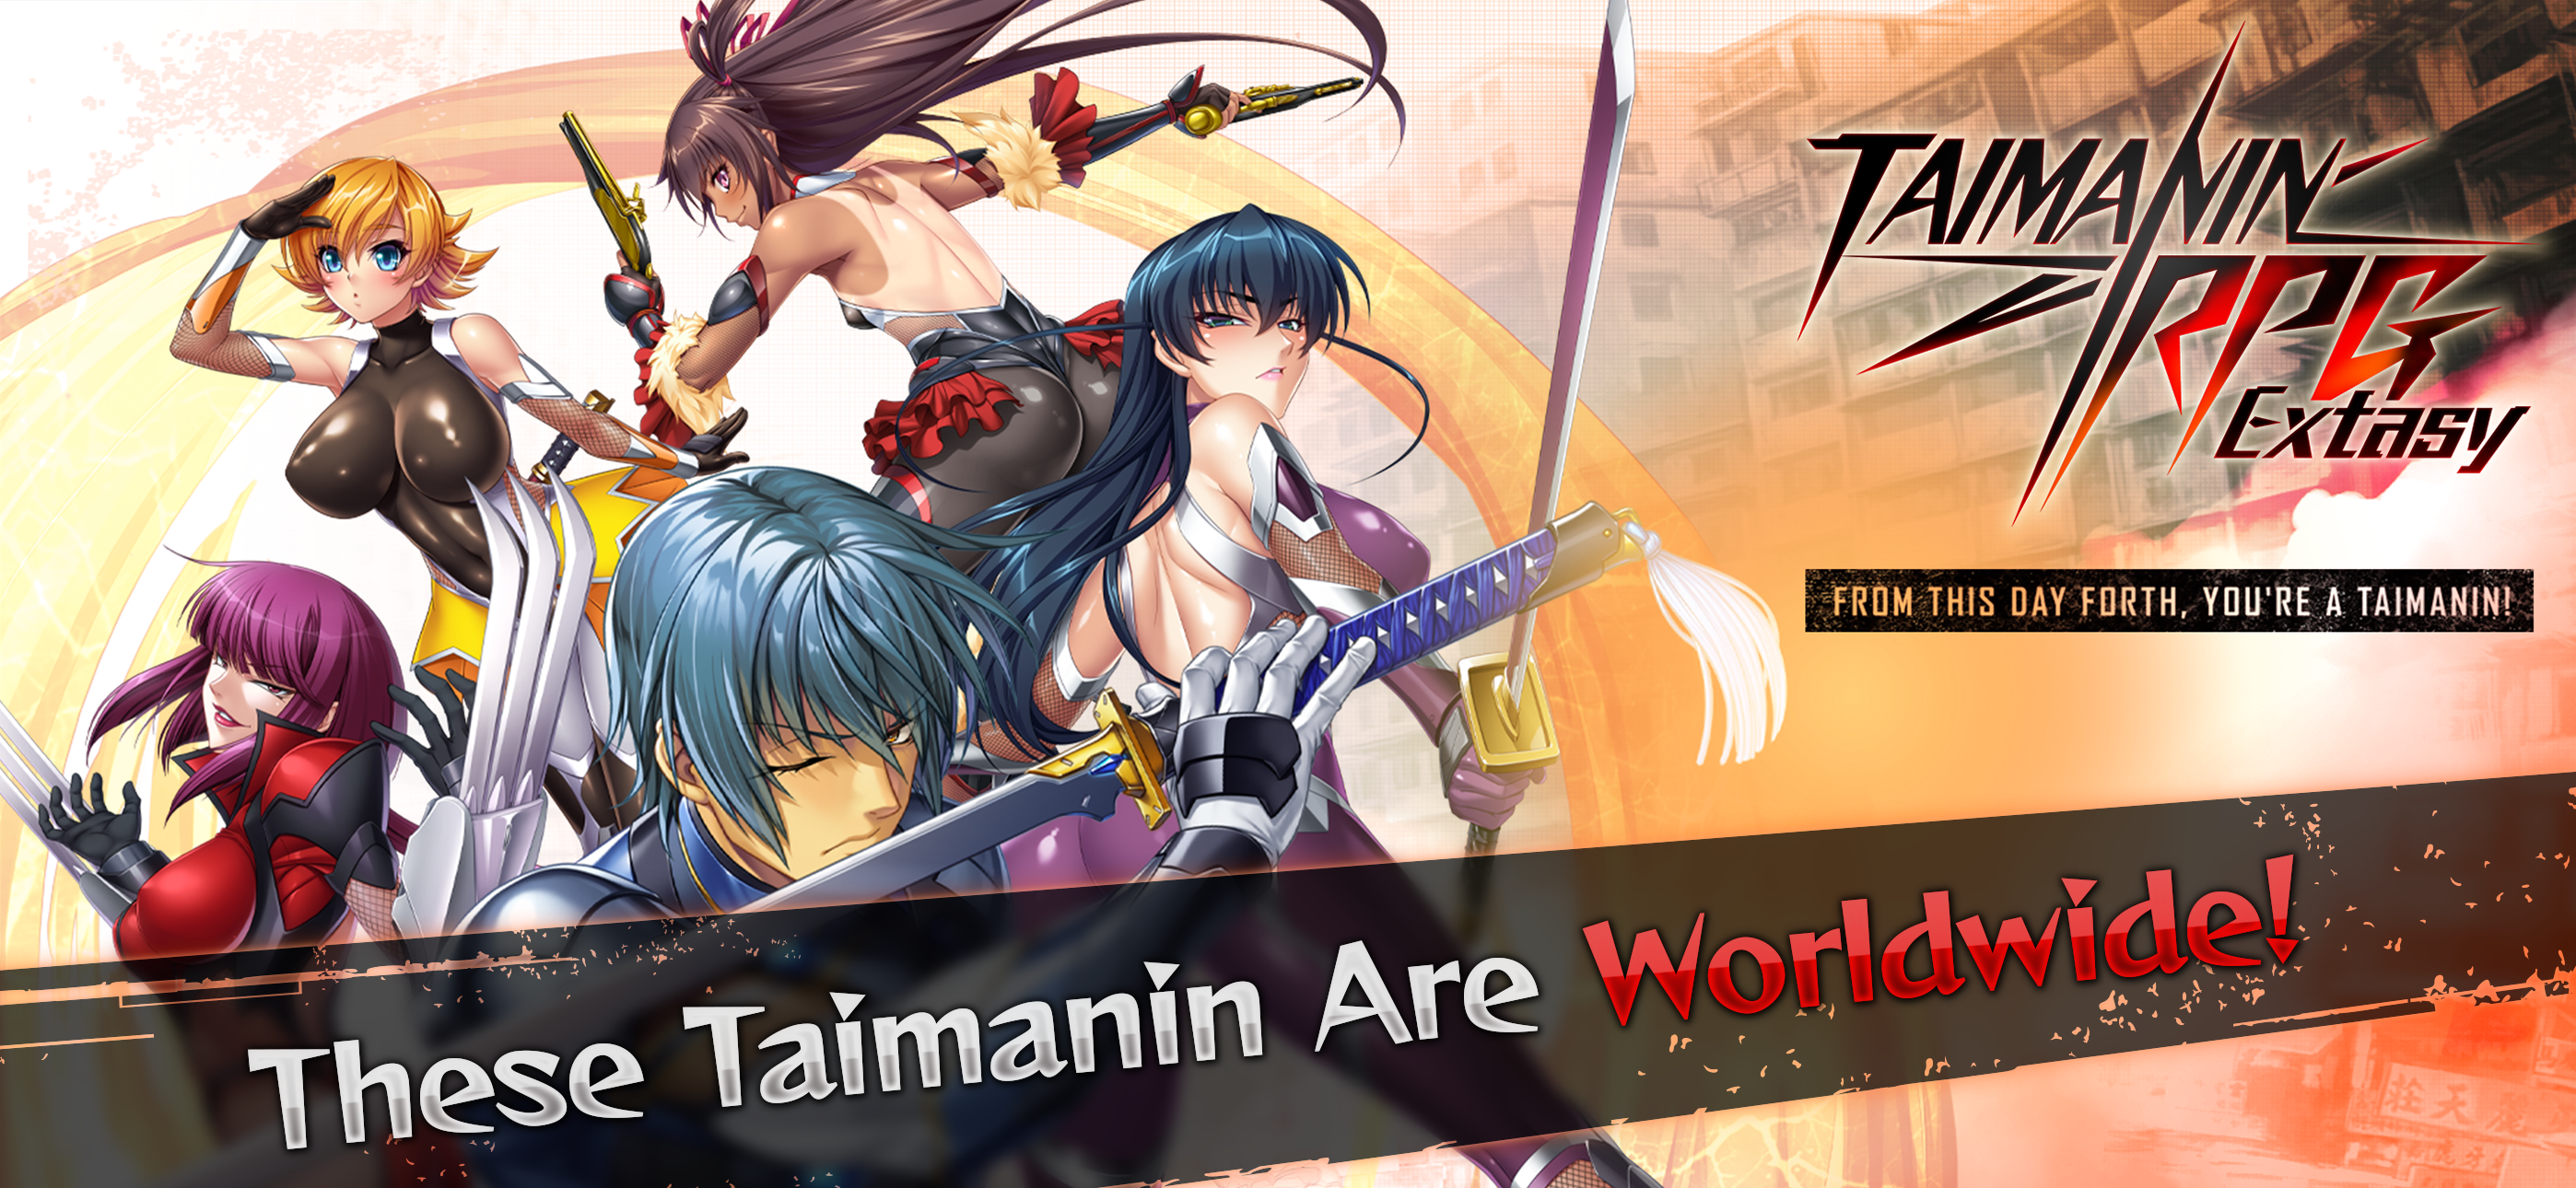 Screenshot 1 of Taimanin RPG Extase 1.0.20